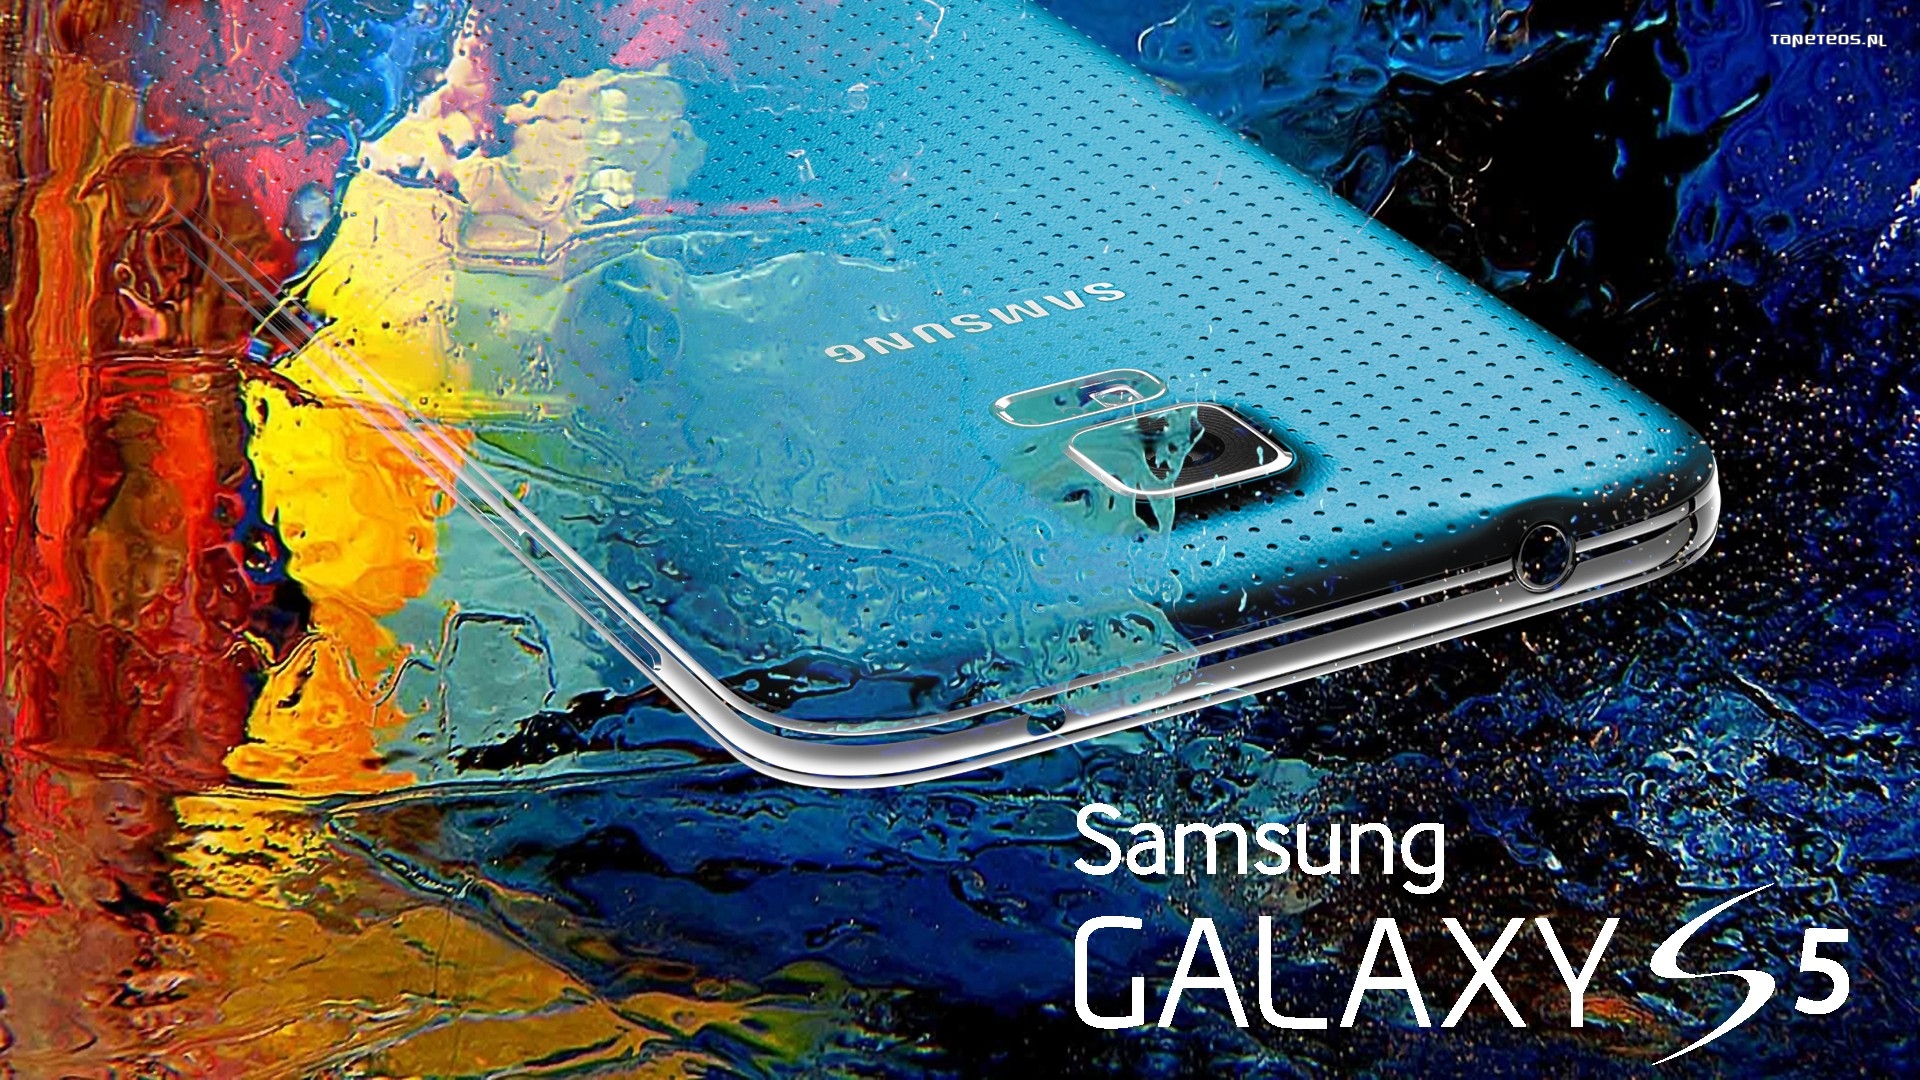 Samsung 009 1920x1080 Galaxy S5